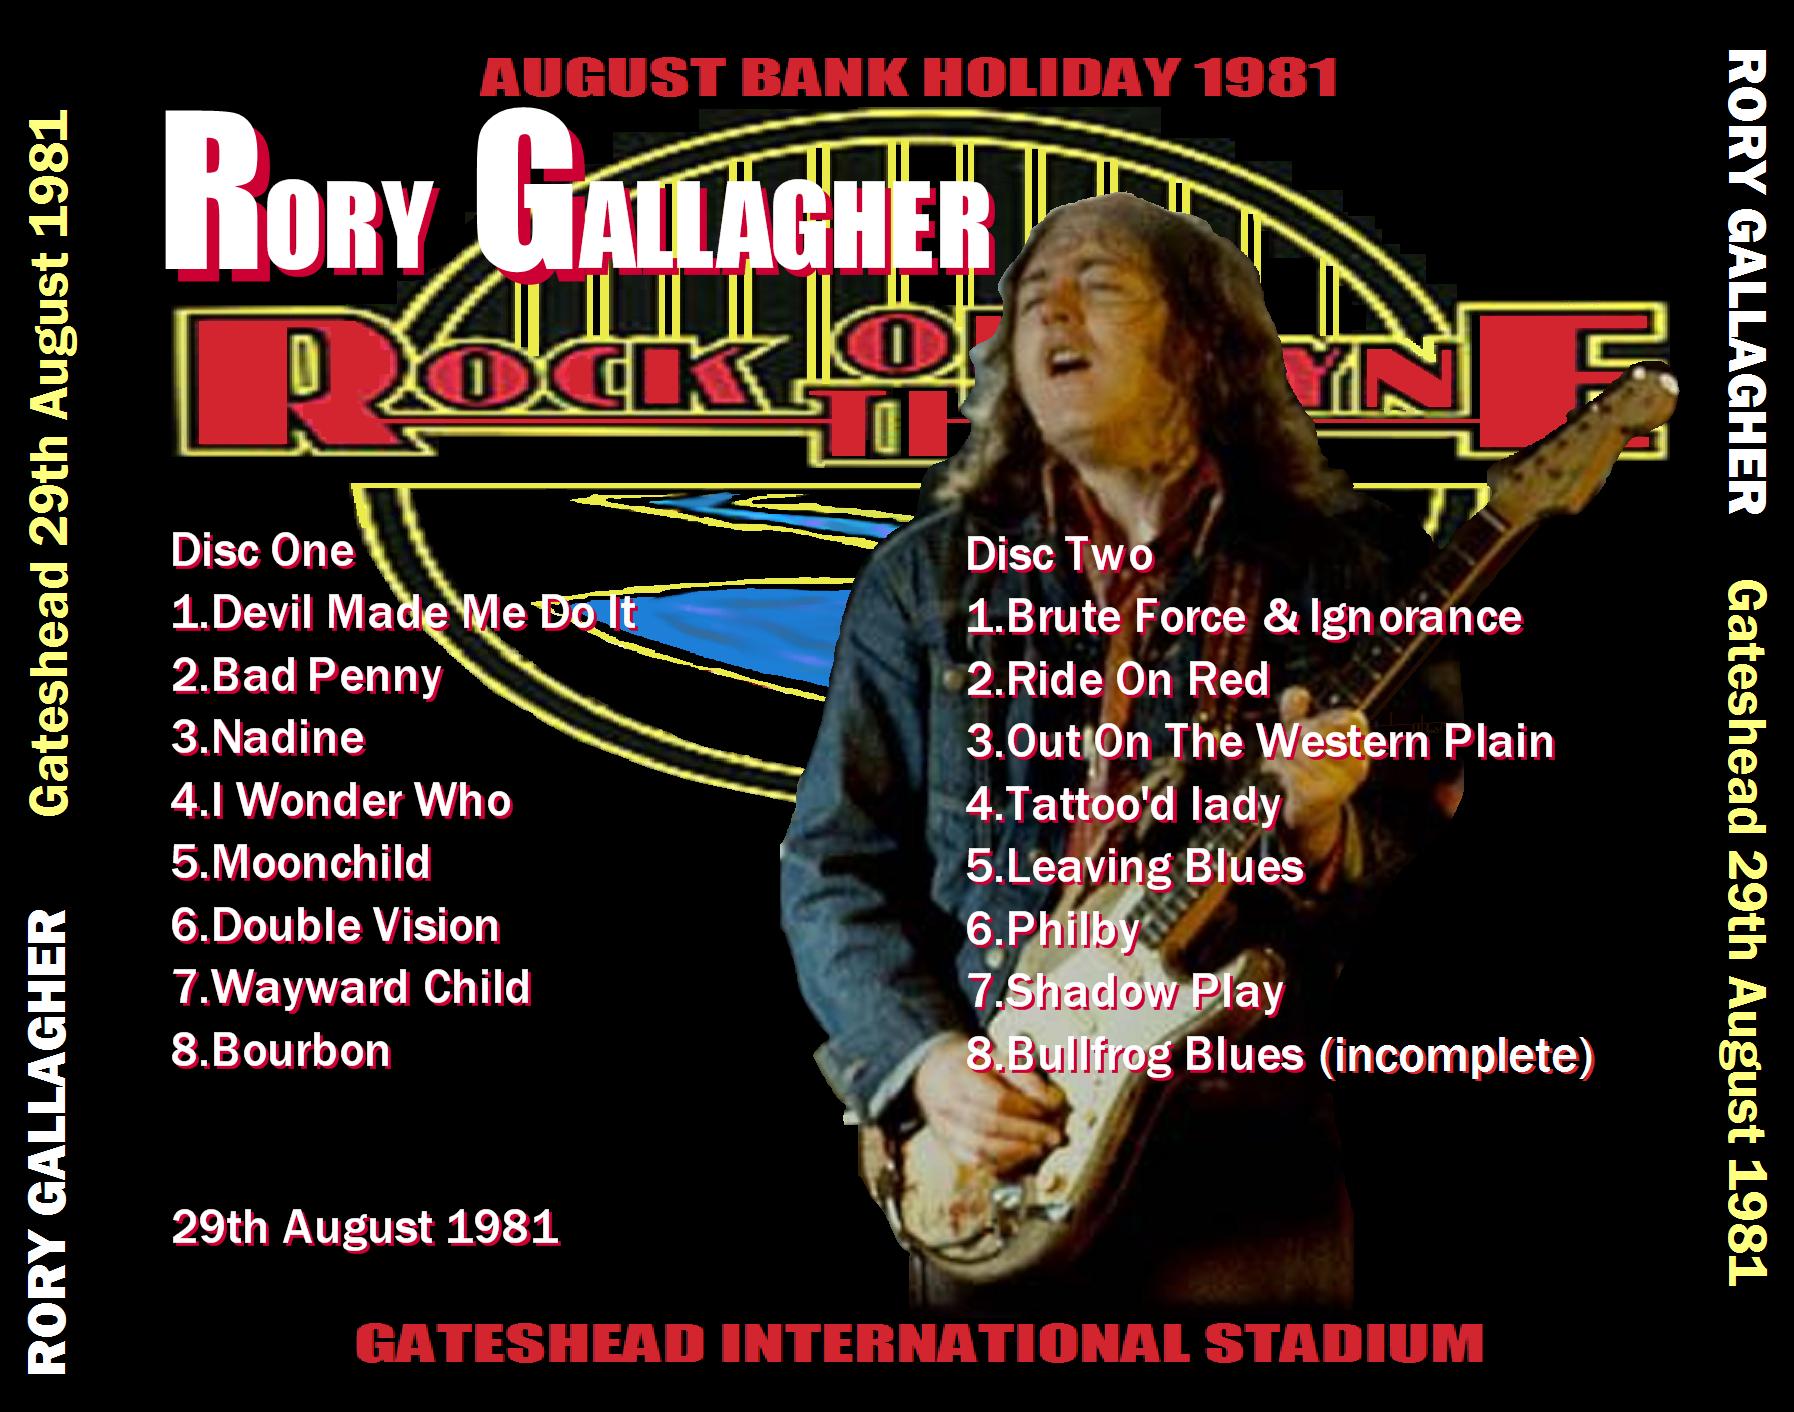 RoryGallagher1981-08-30GatesheadInternationalStadiumTyneAndWearUK (5).JPG